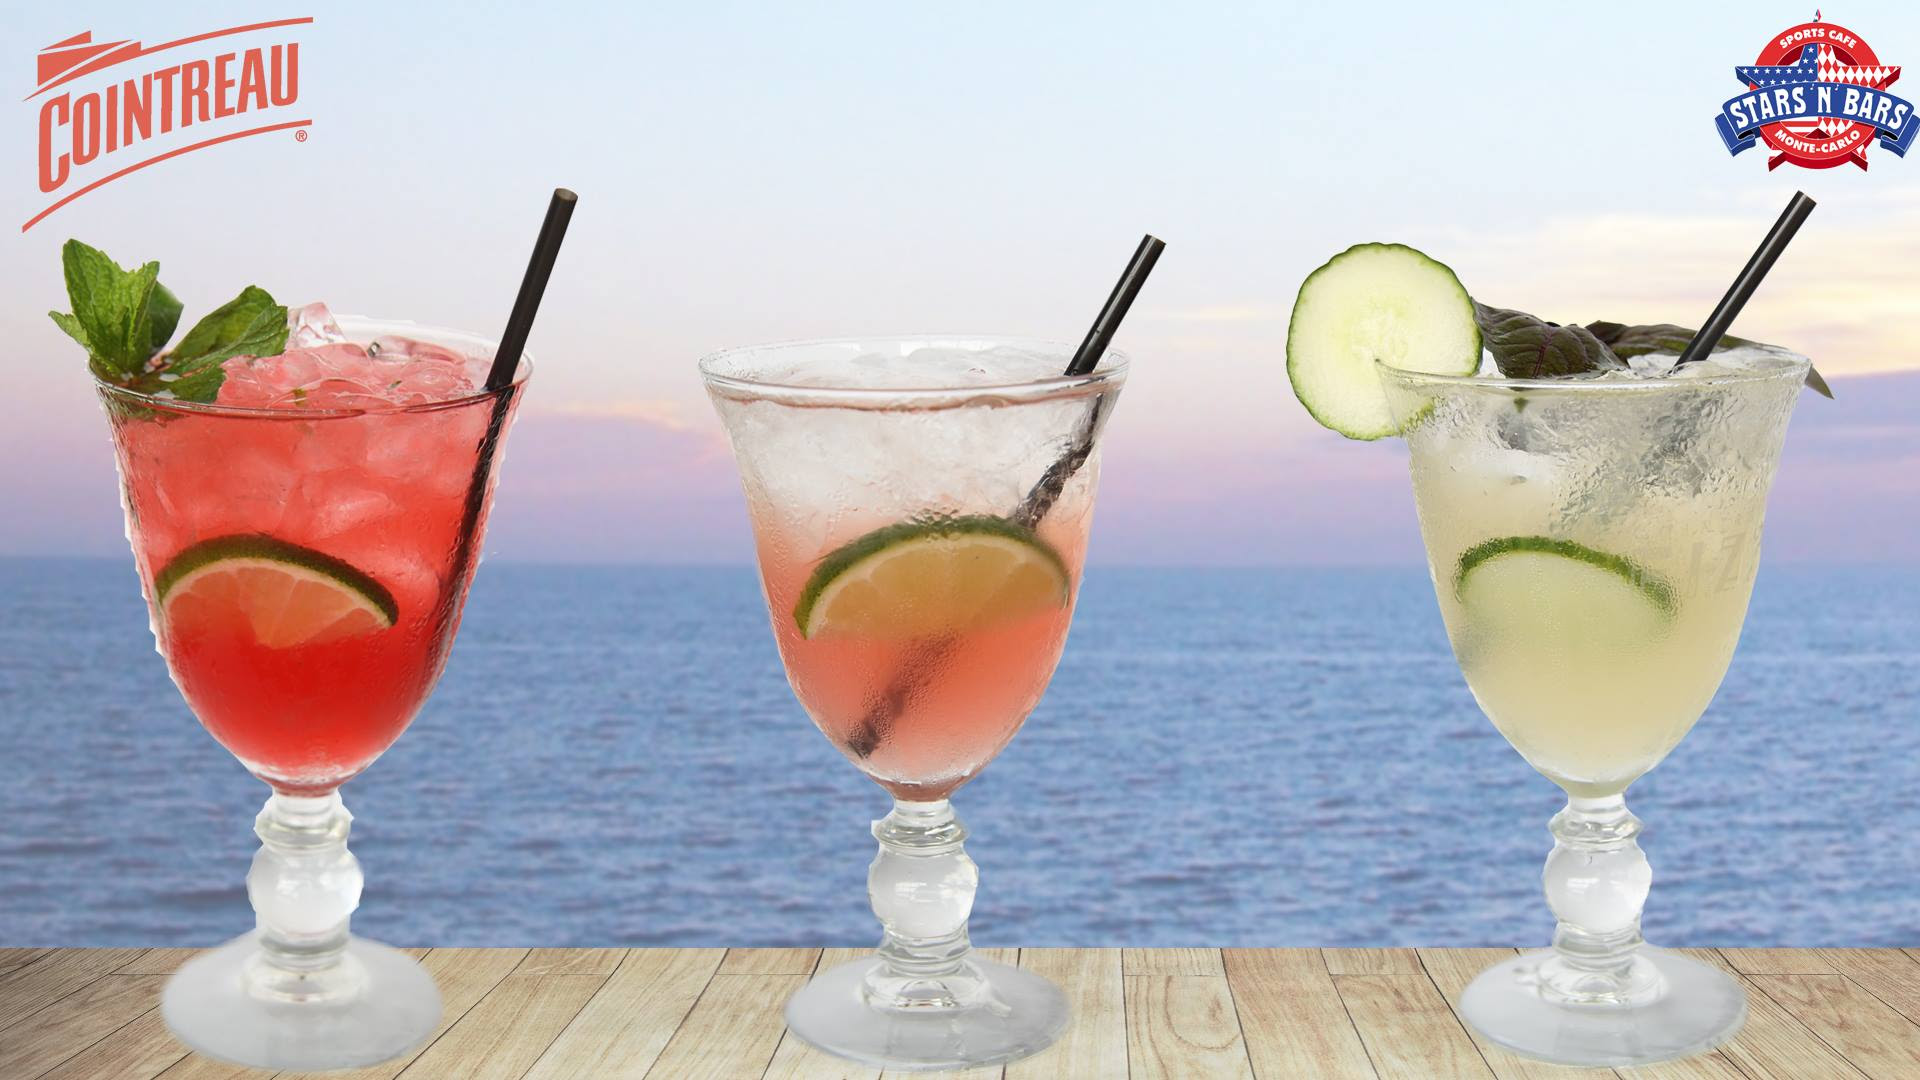 Le Stars’N’Bars propose de nouveau cocktails … Delicious !